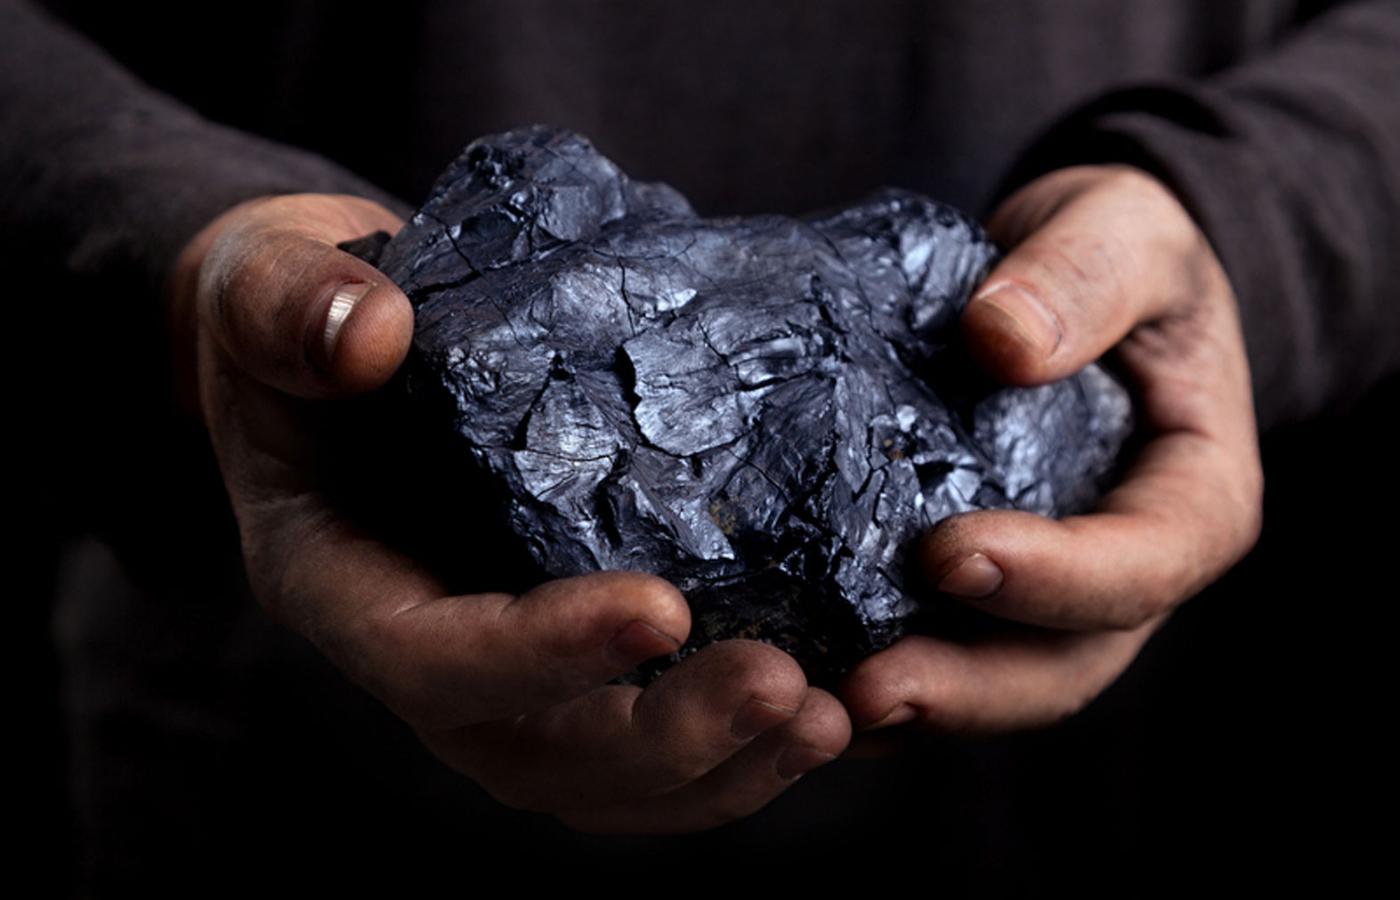 Śląsk to wciąż węgiel i górnictwo, toteż najgorzej jest wśród podziemnych kamratów i ich rodzin tu, na powierzchni.